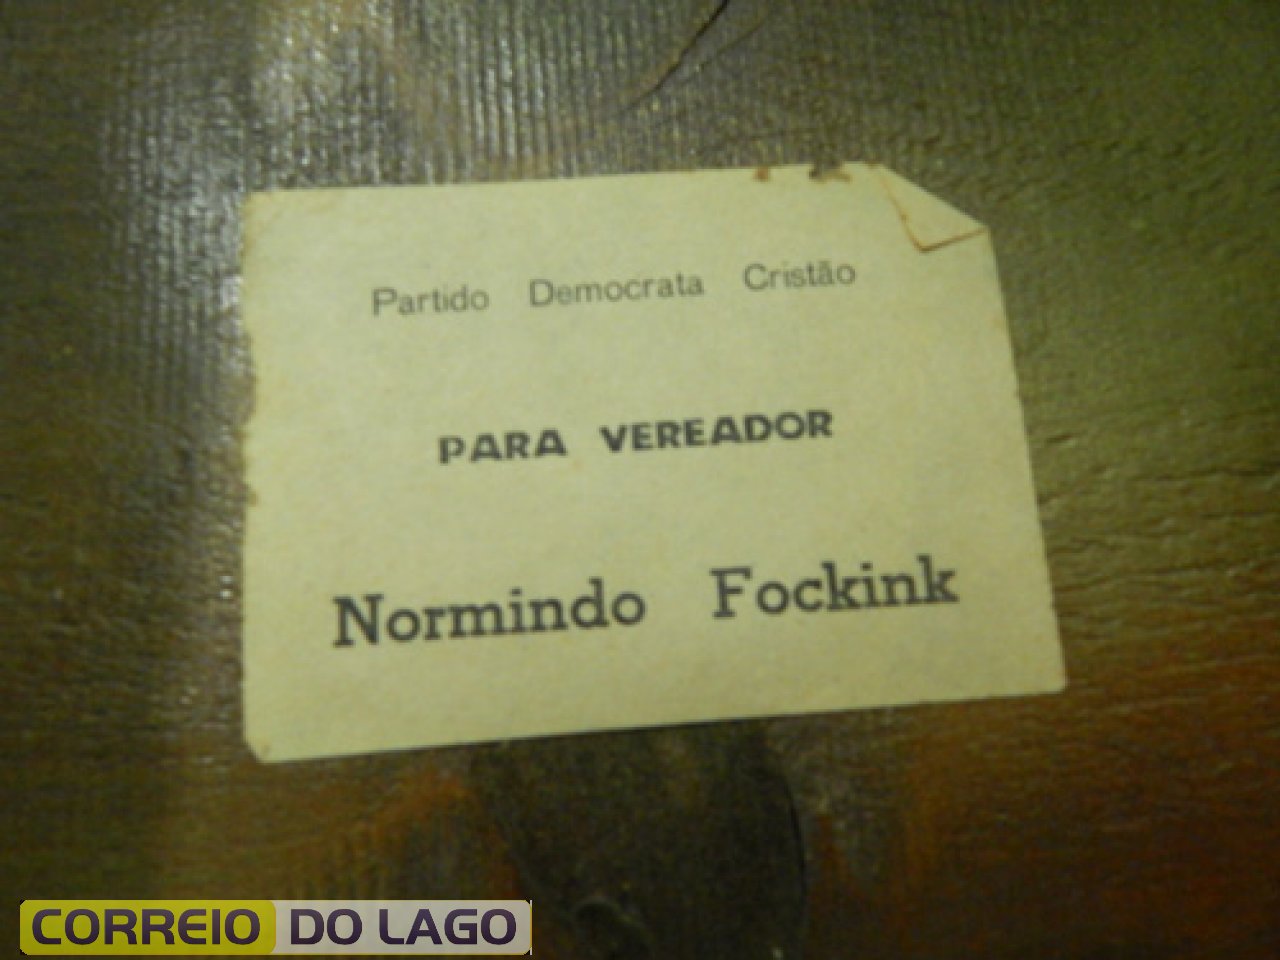 Tipo de material usado antes das eleições para informar o nome do candidato e partido. Início da déc. de 1960.